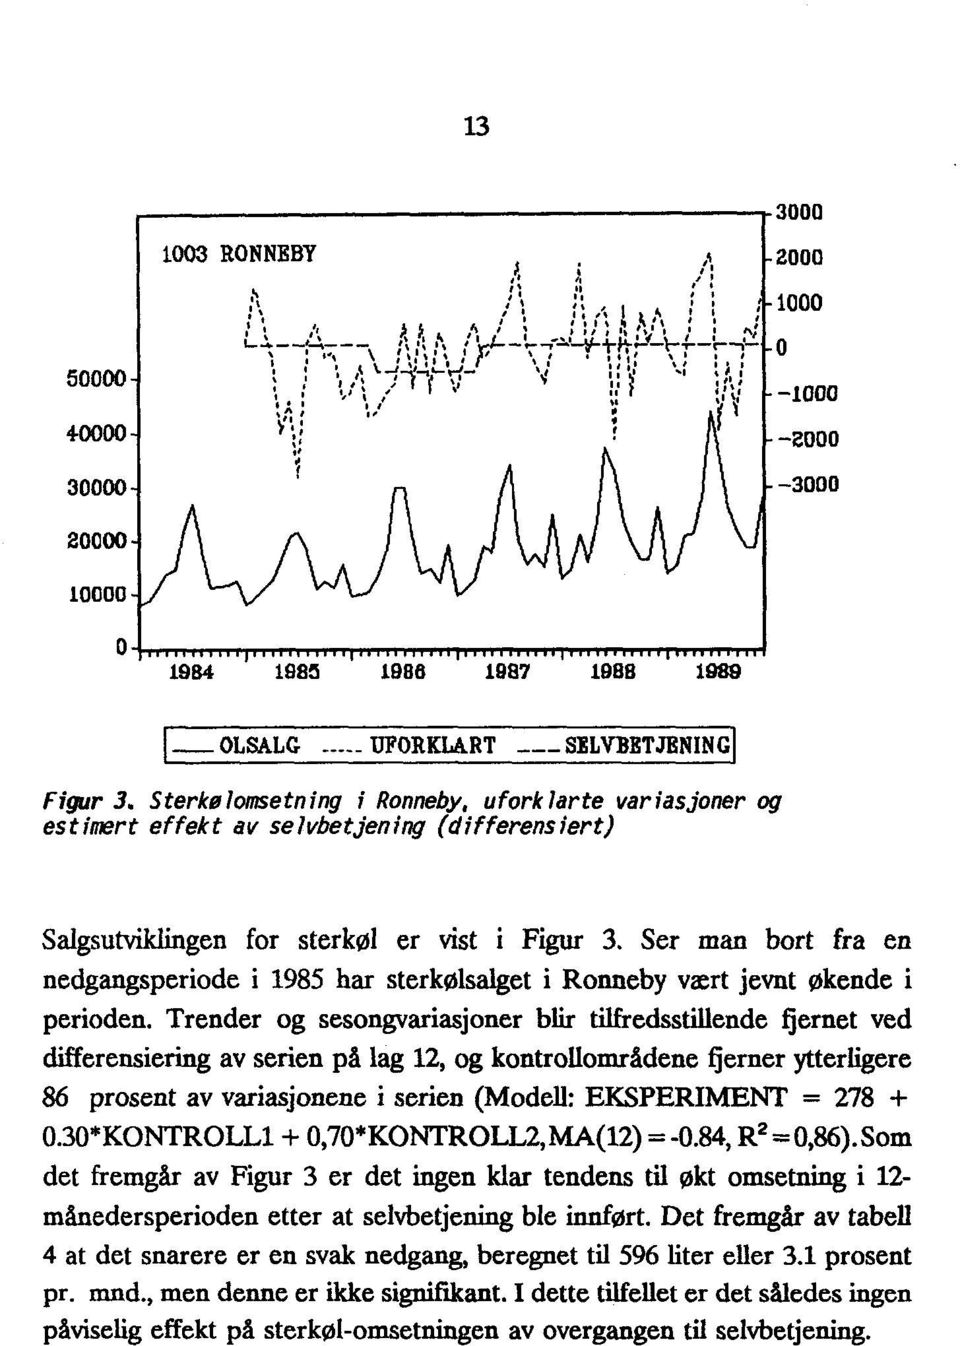 Ser man bort fra en nedgangsperiode i 1985 har sterkølsalget i Ronneby vært jevnt økende i perioden.